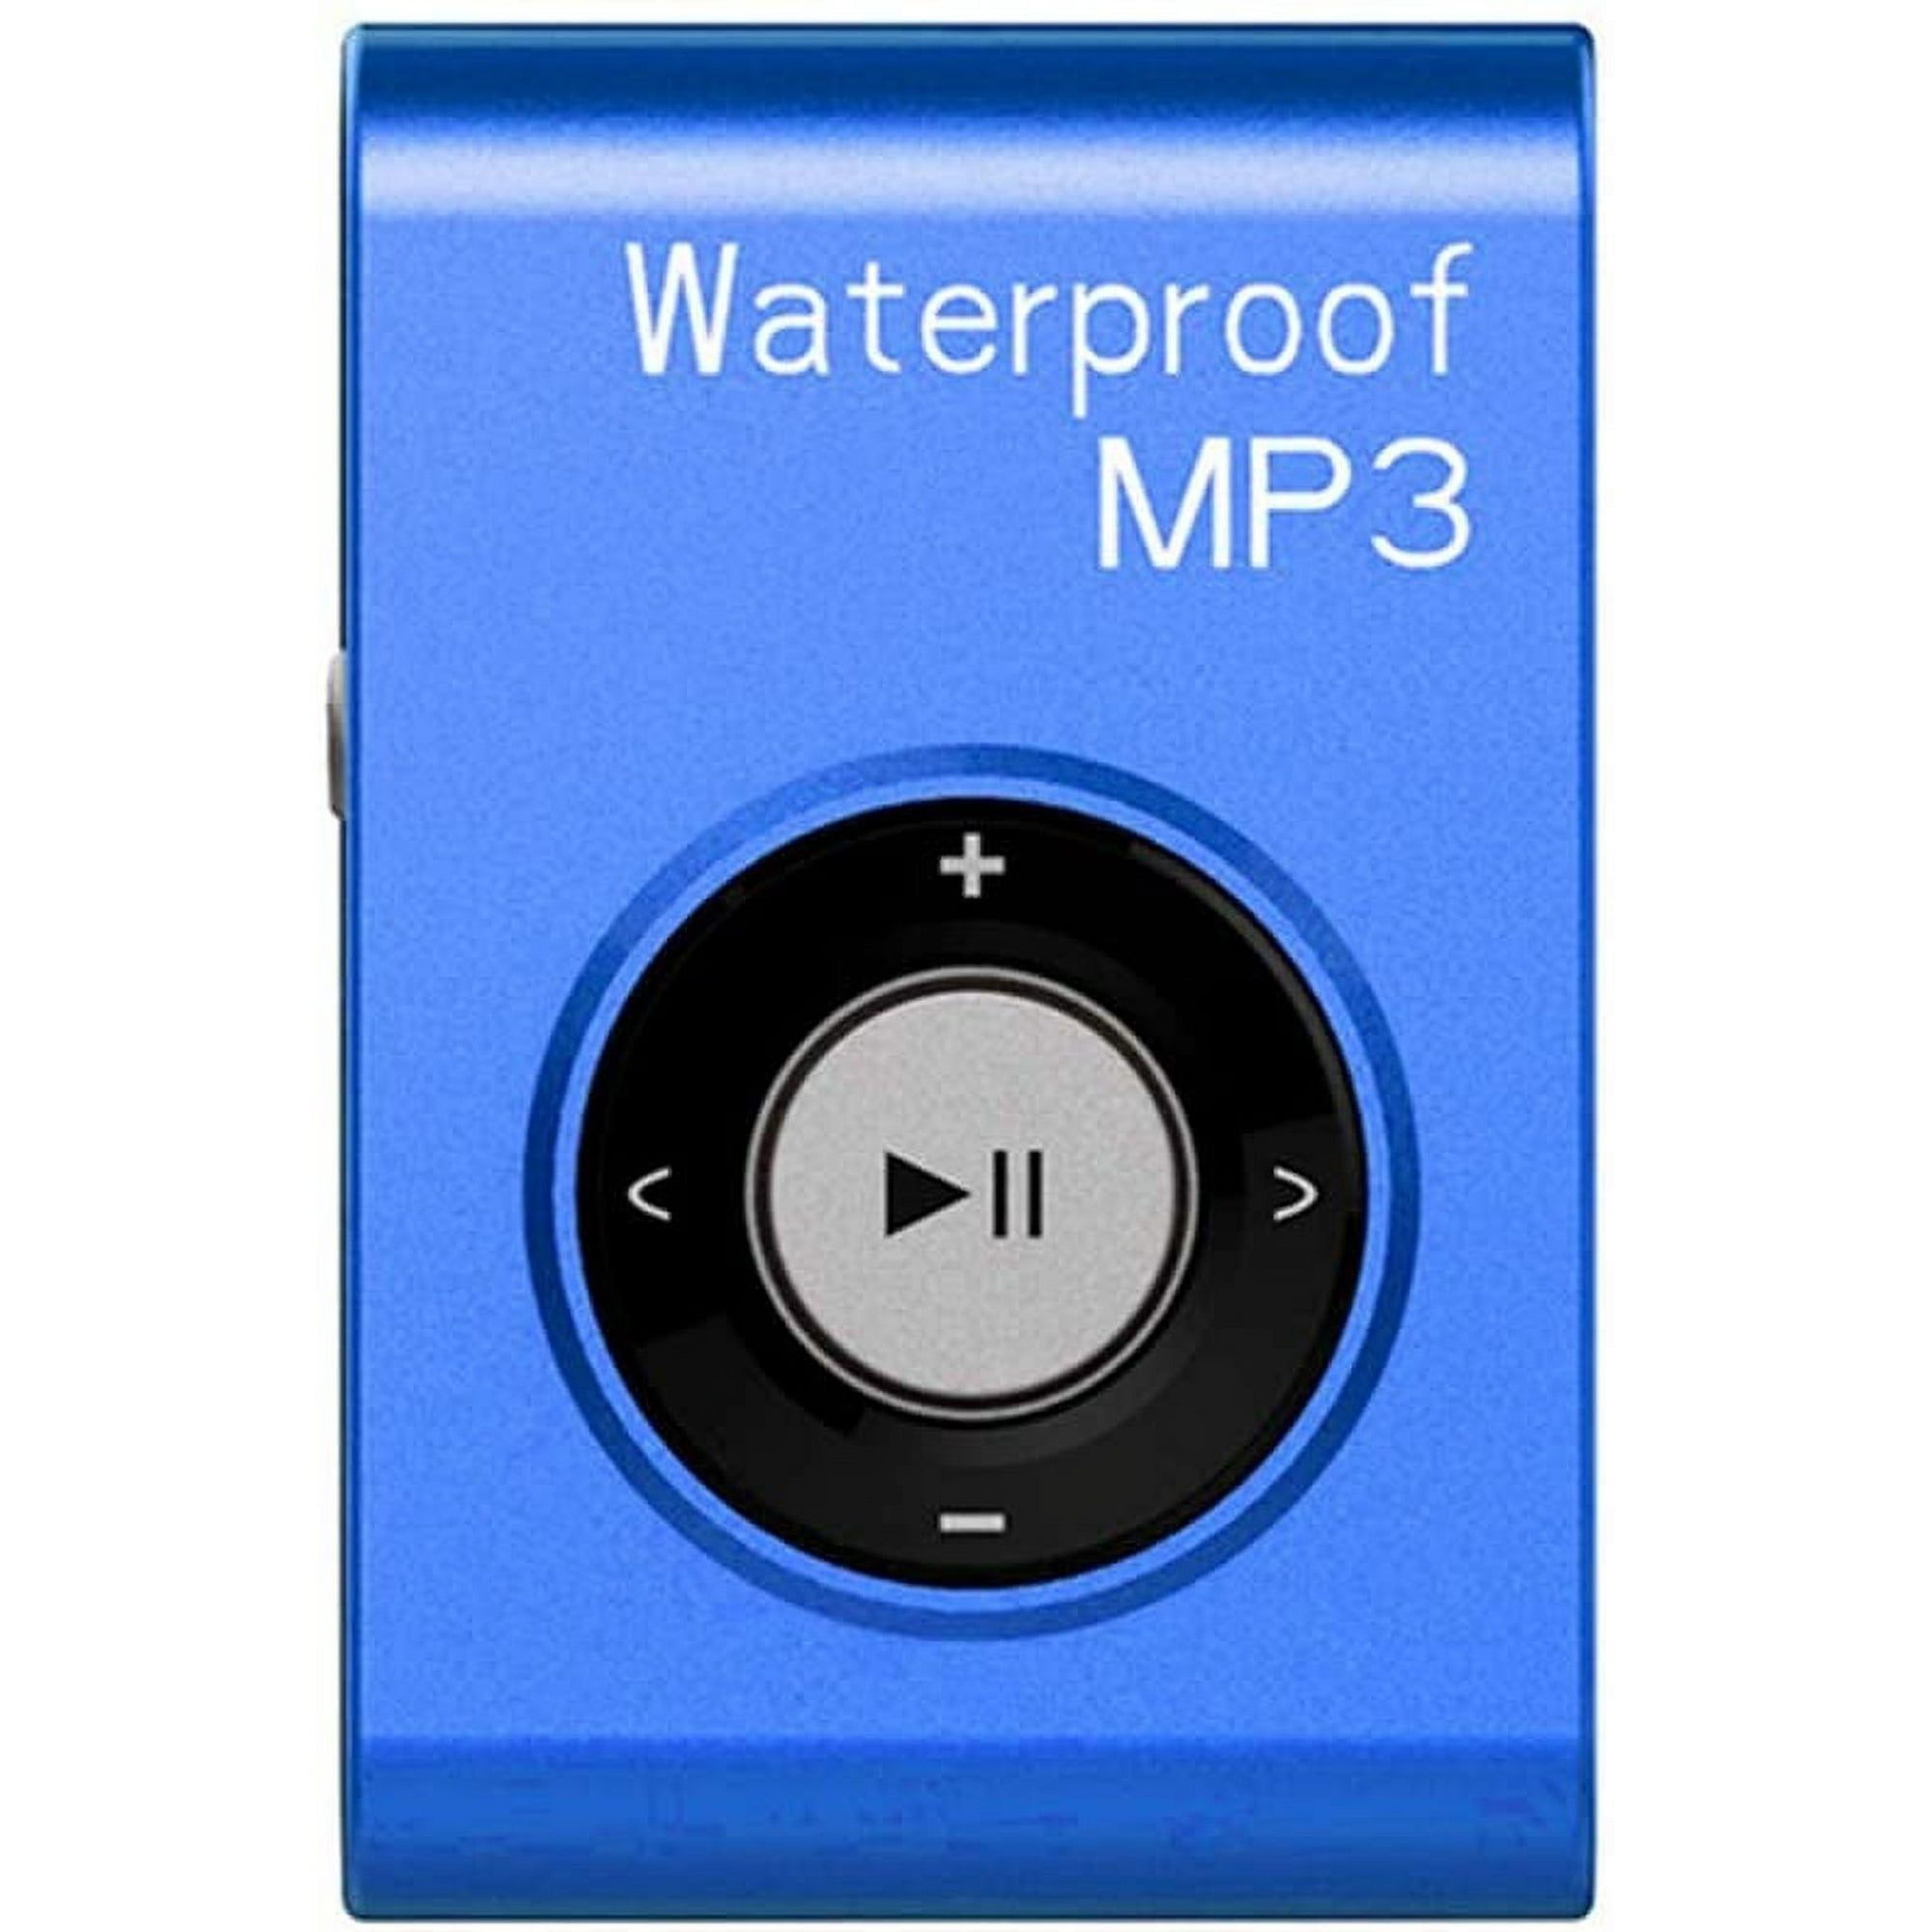 Reproductor de MP3 a prueba de agua, 8GB para natación